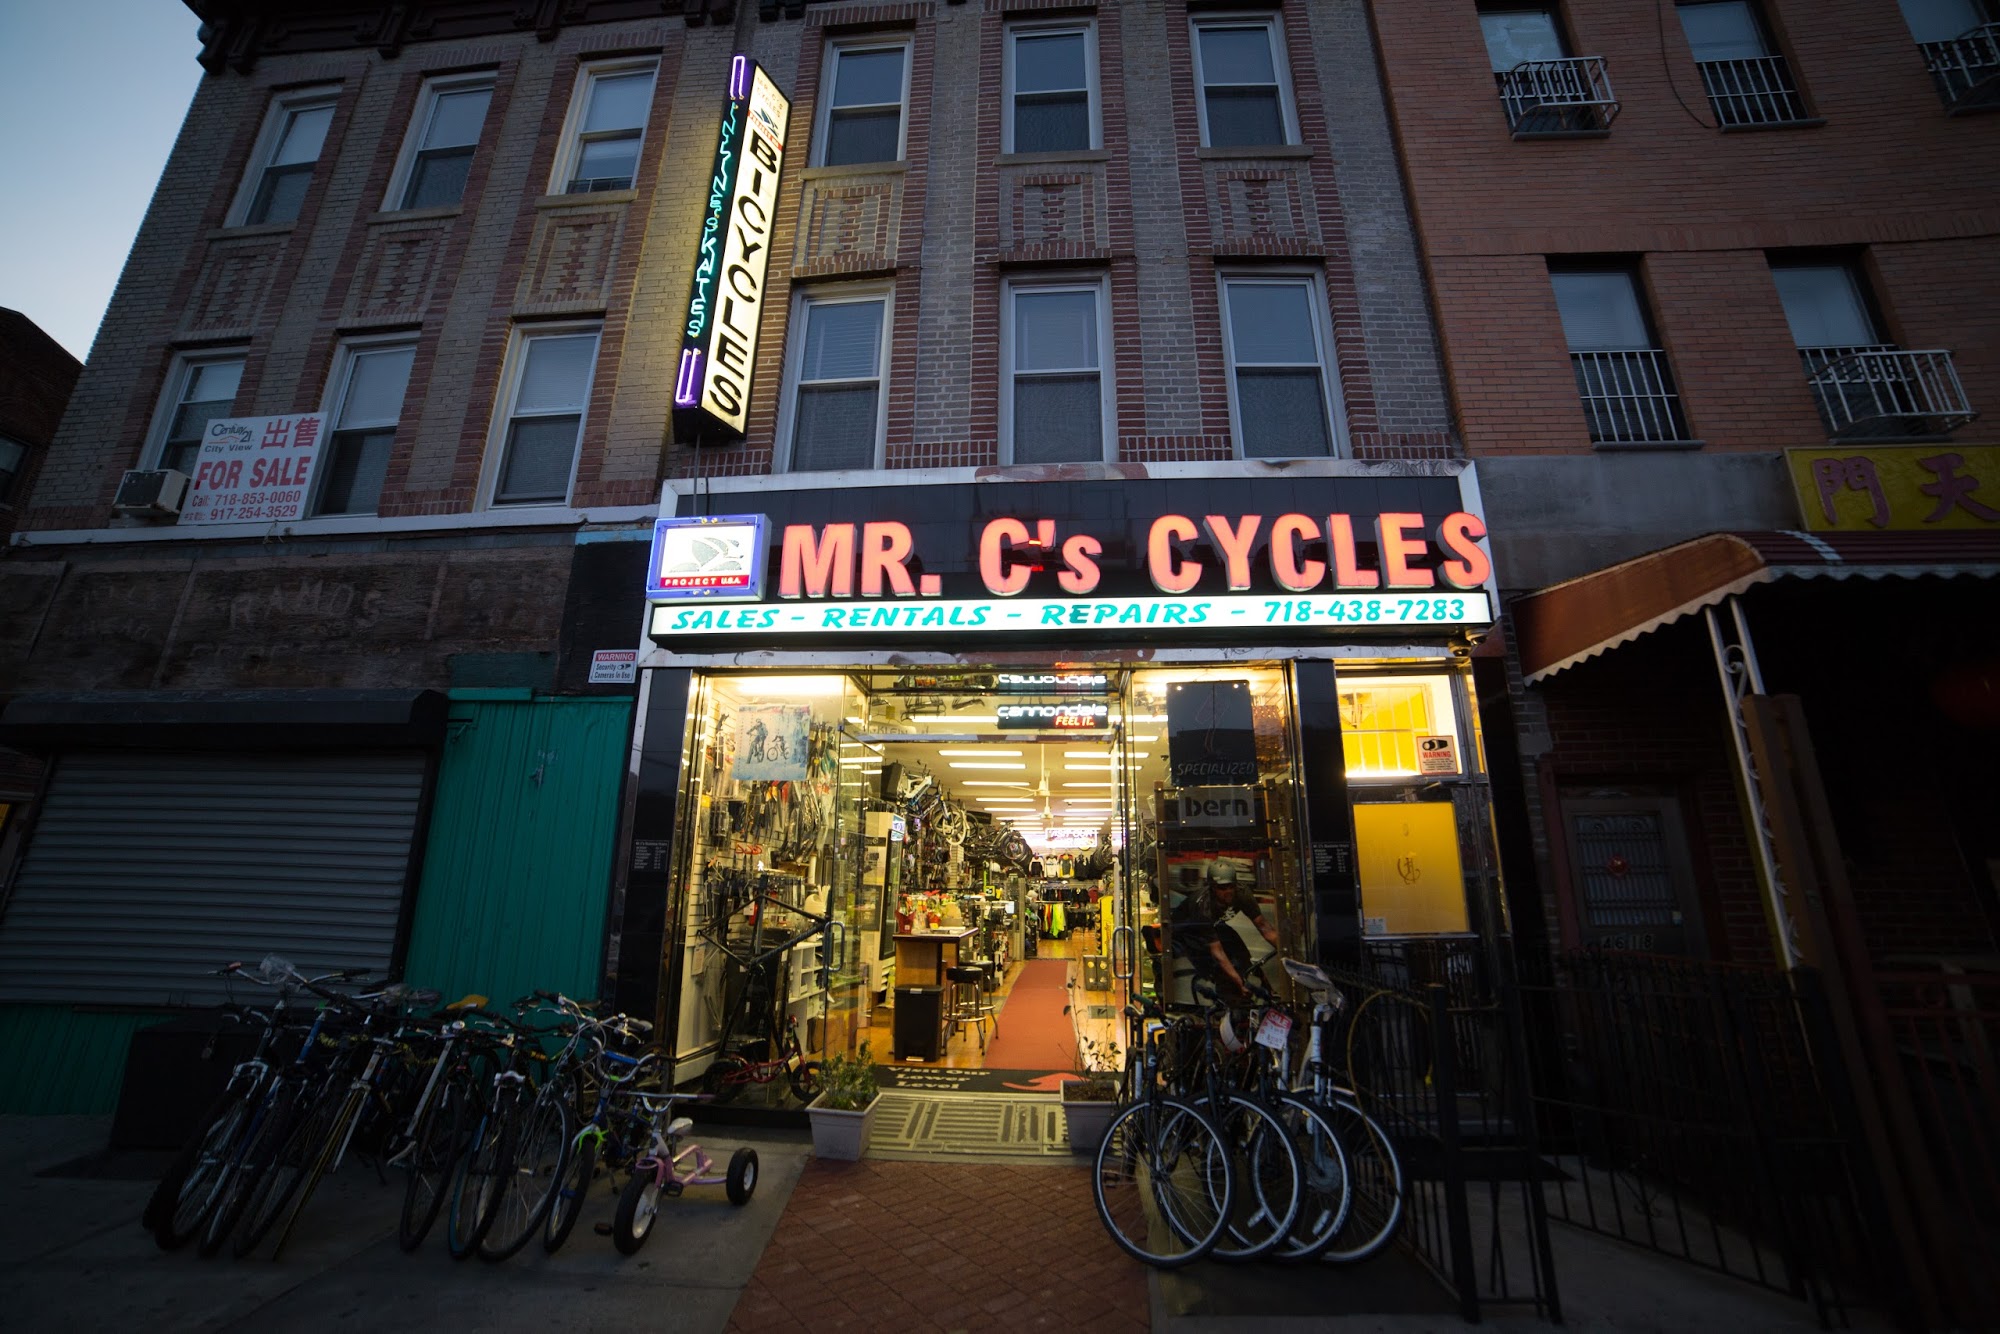 Mr. C’s Cycles